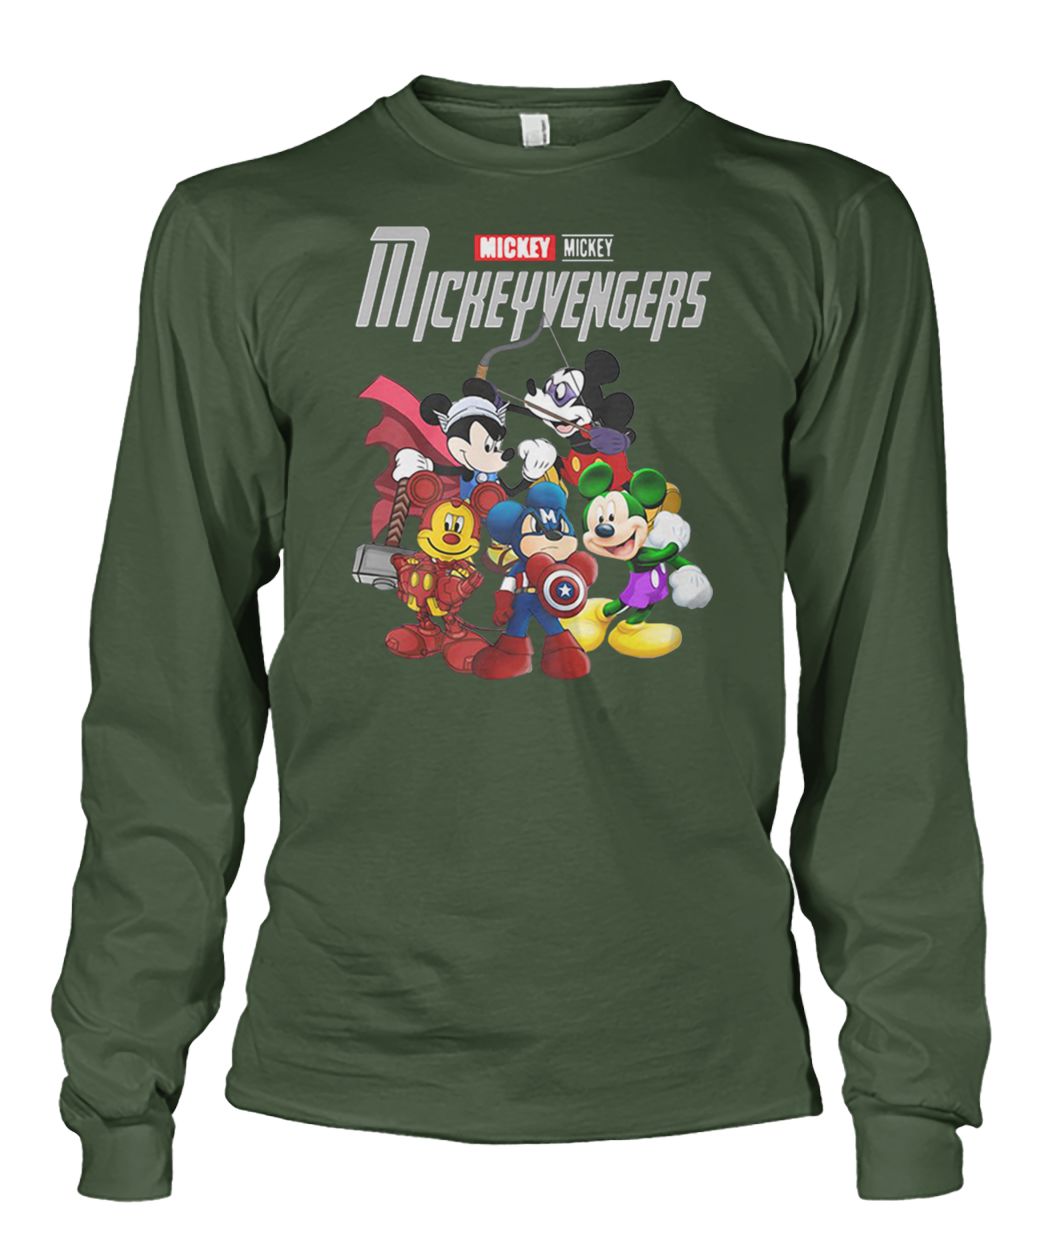 Marvel avengers endgame mickeyvengers mickey unisex long sleeve